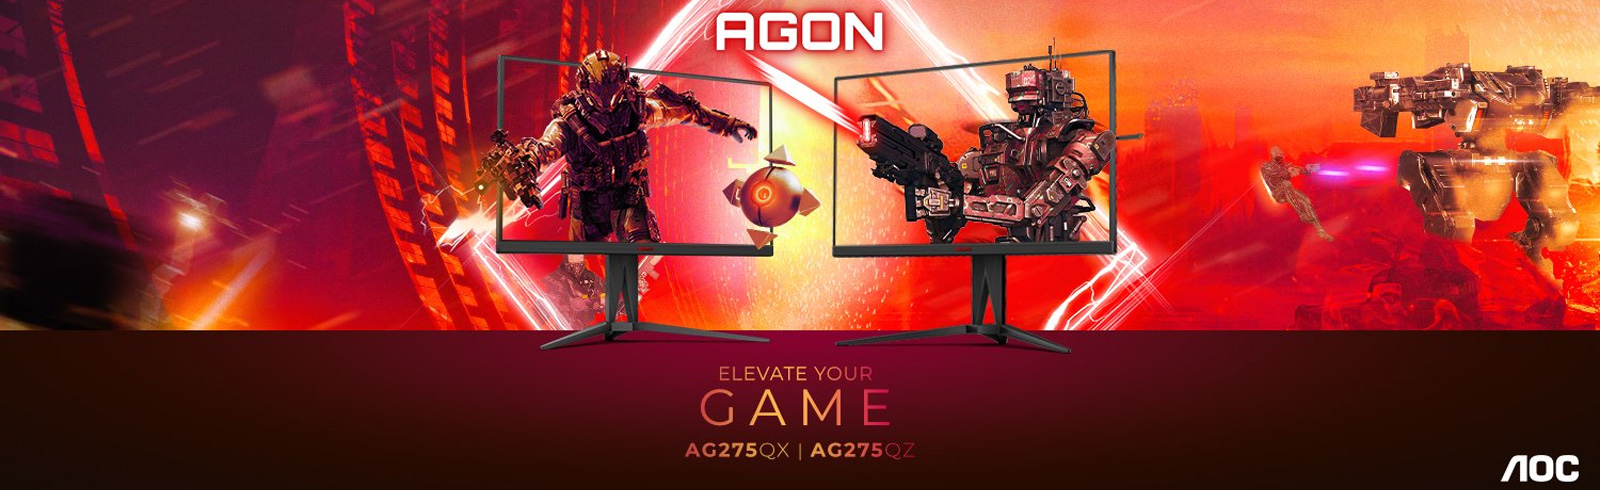 AGON by AOC thương hiệu màn hình chơi game hàng đầu thế giới